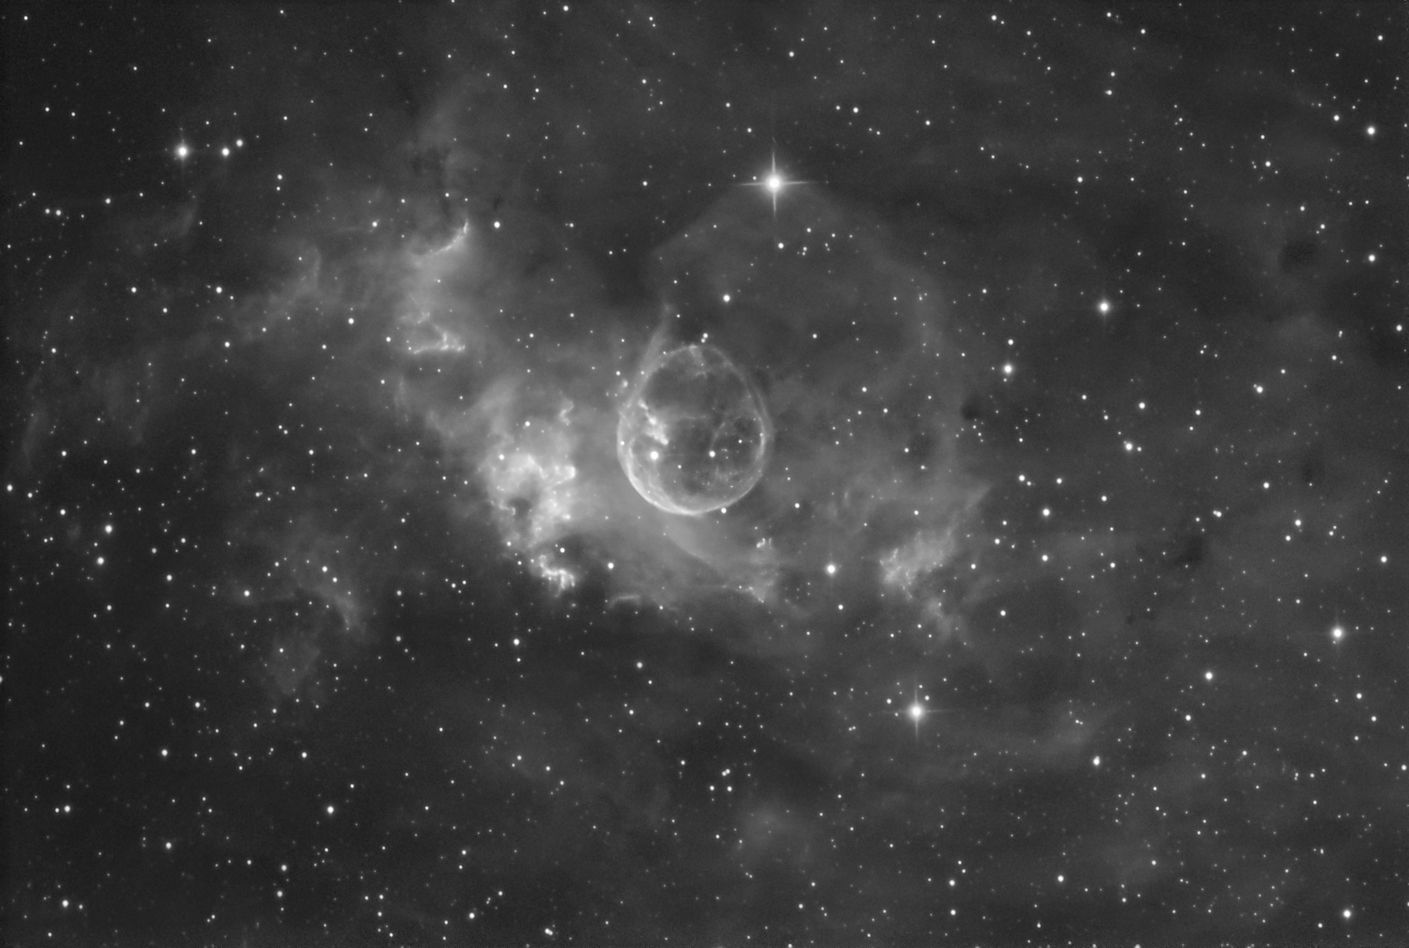 Bubble Nebula in Hydrogen Alpha